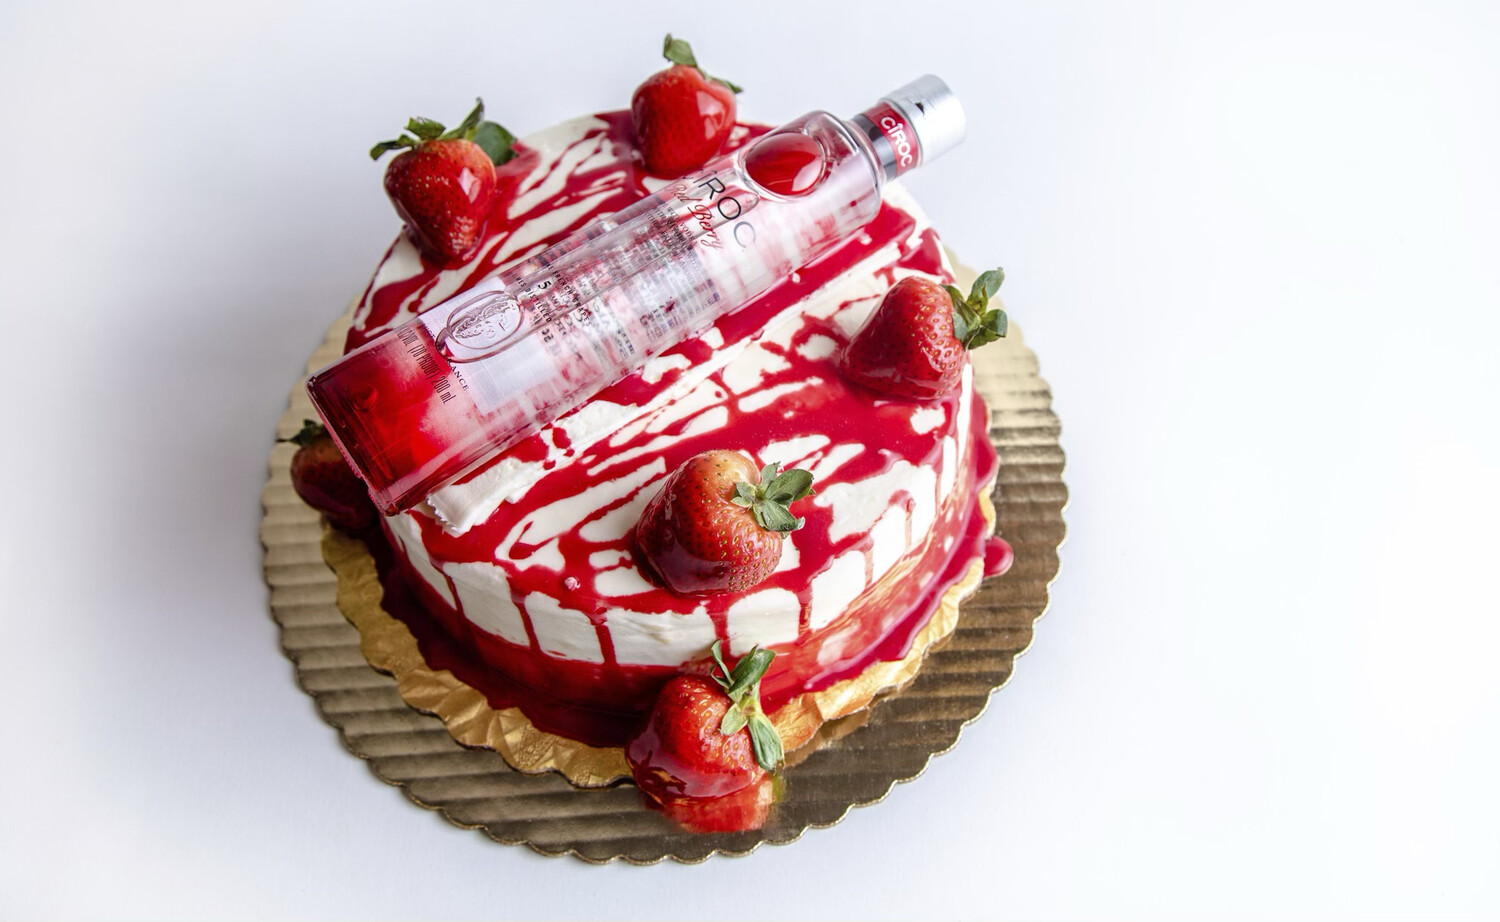 Strawberry Glazed Cake 9”